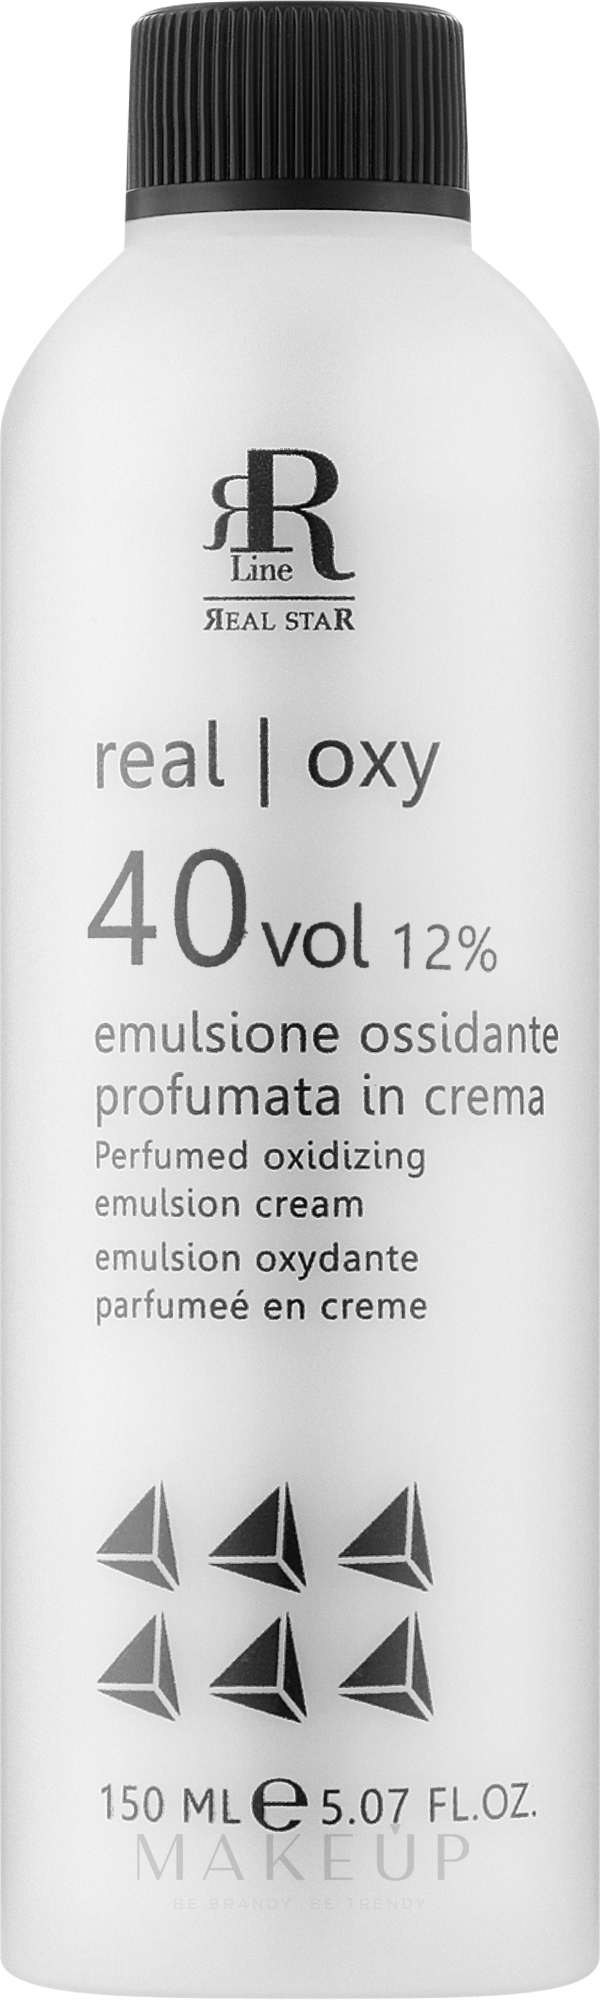 Parfümierte oxidierende Emulsion 12% - RR Line Parfymed Oxidizing Emulsion Cream — Bild 150 ml